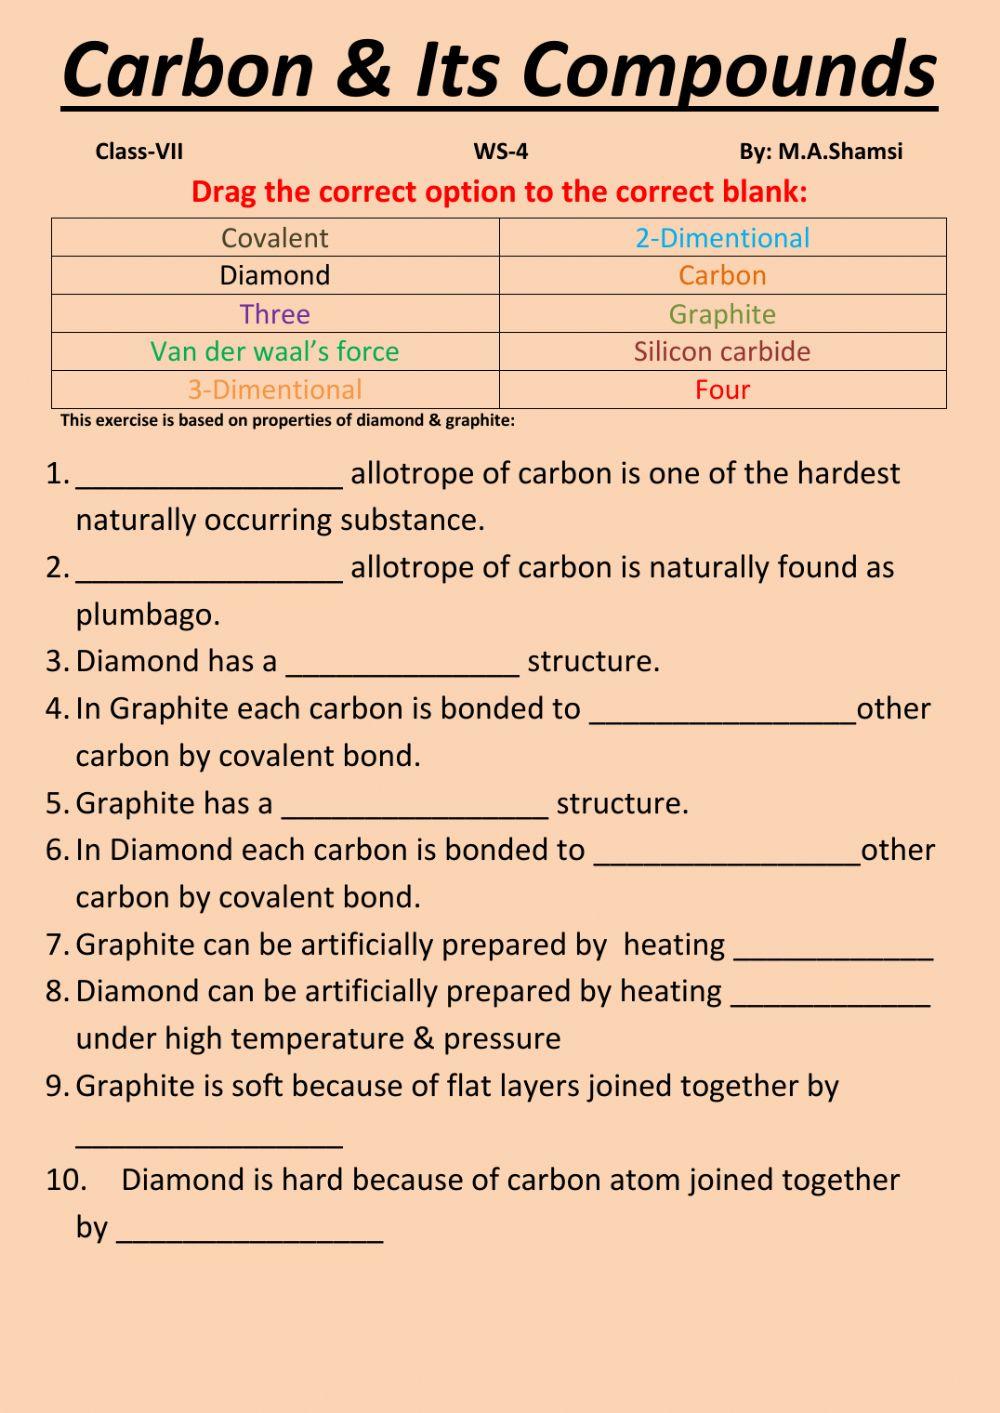 Carbon & its compounds